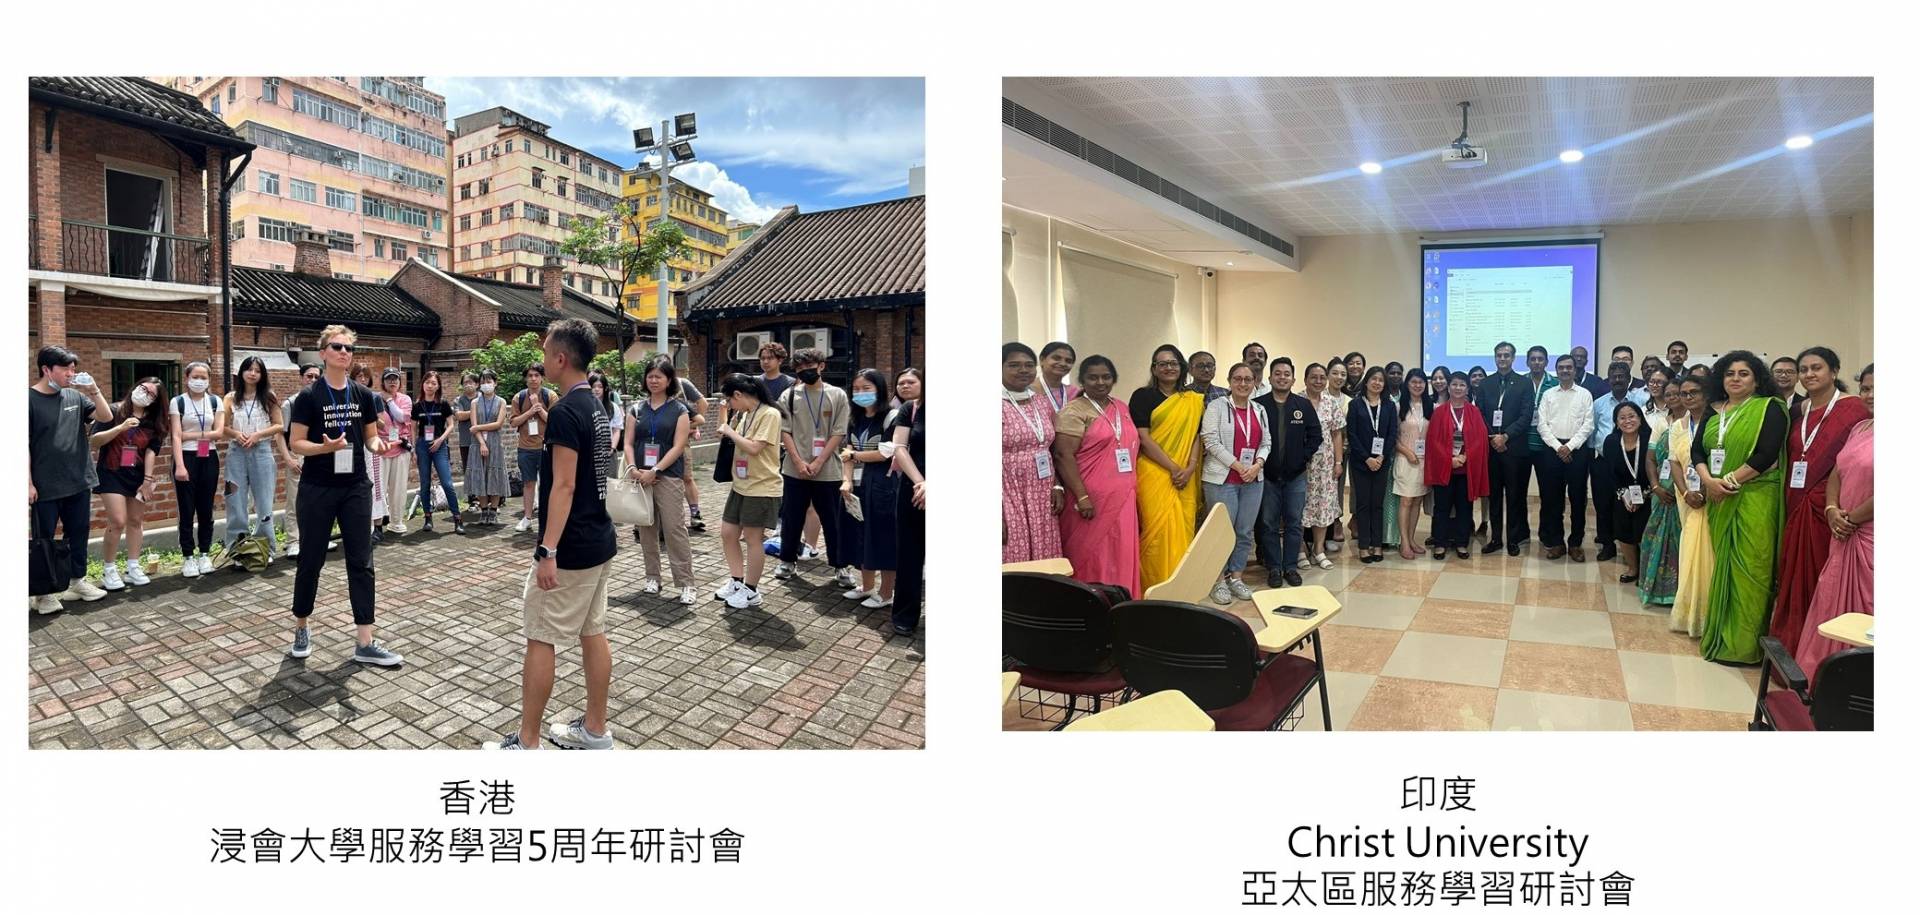 02-1參加香港浸服務學習研討會及印度CU亞太區服務學習研討會照片